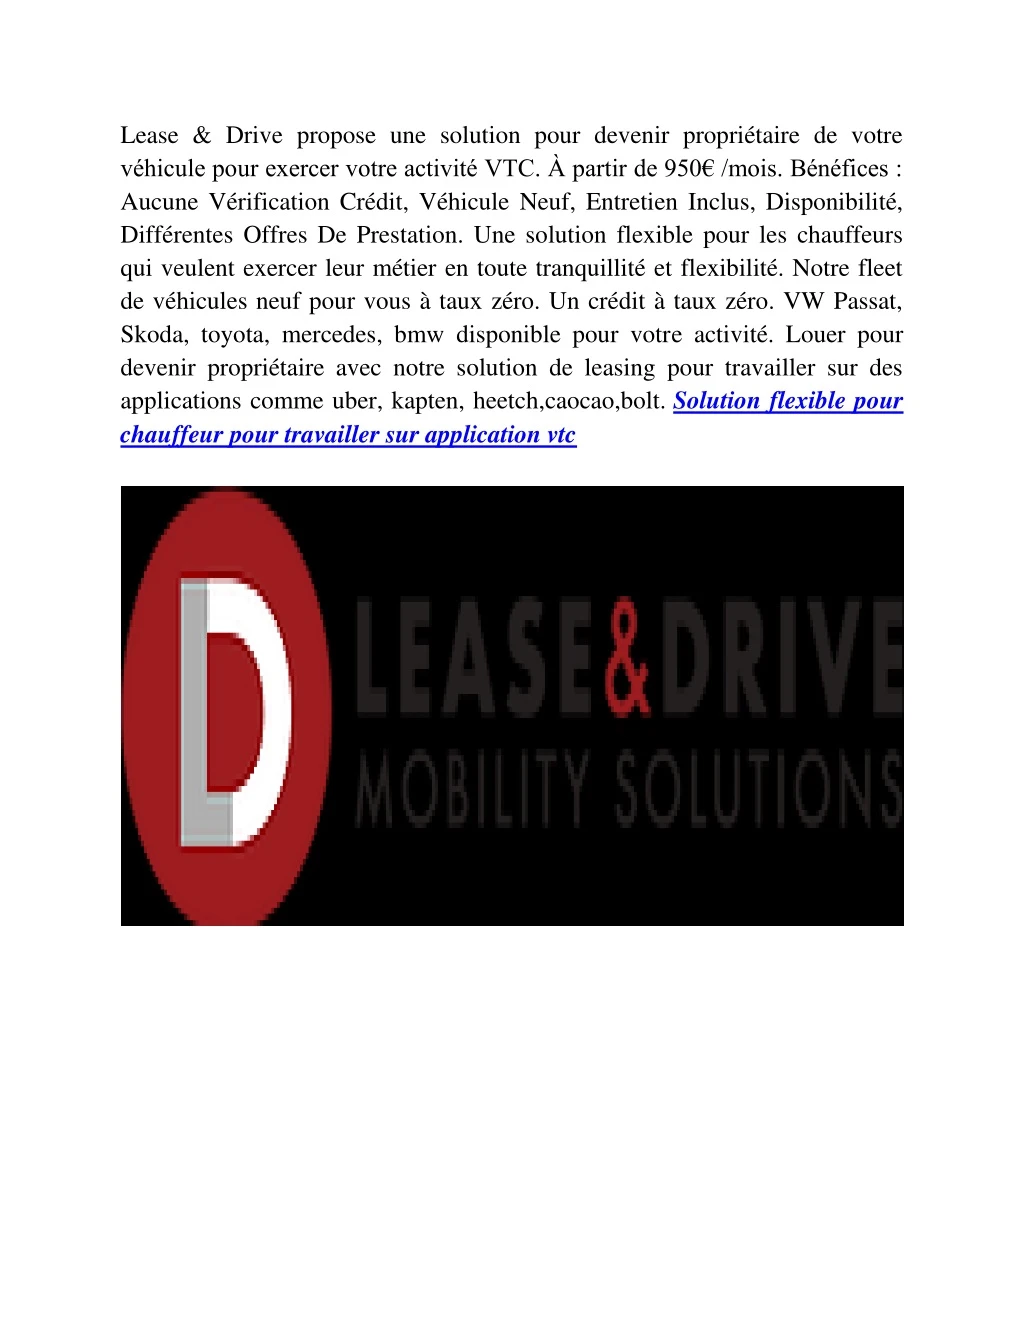 lease drive propose une solution pour devenir